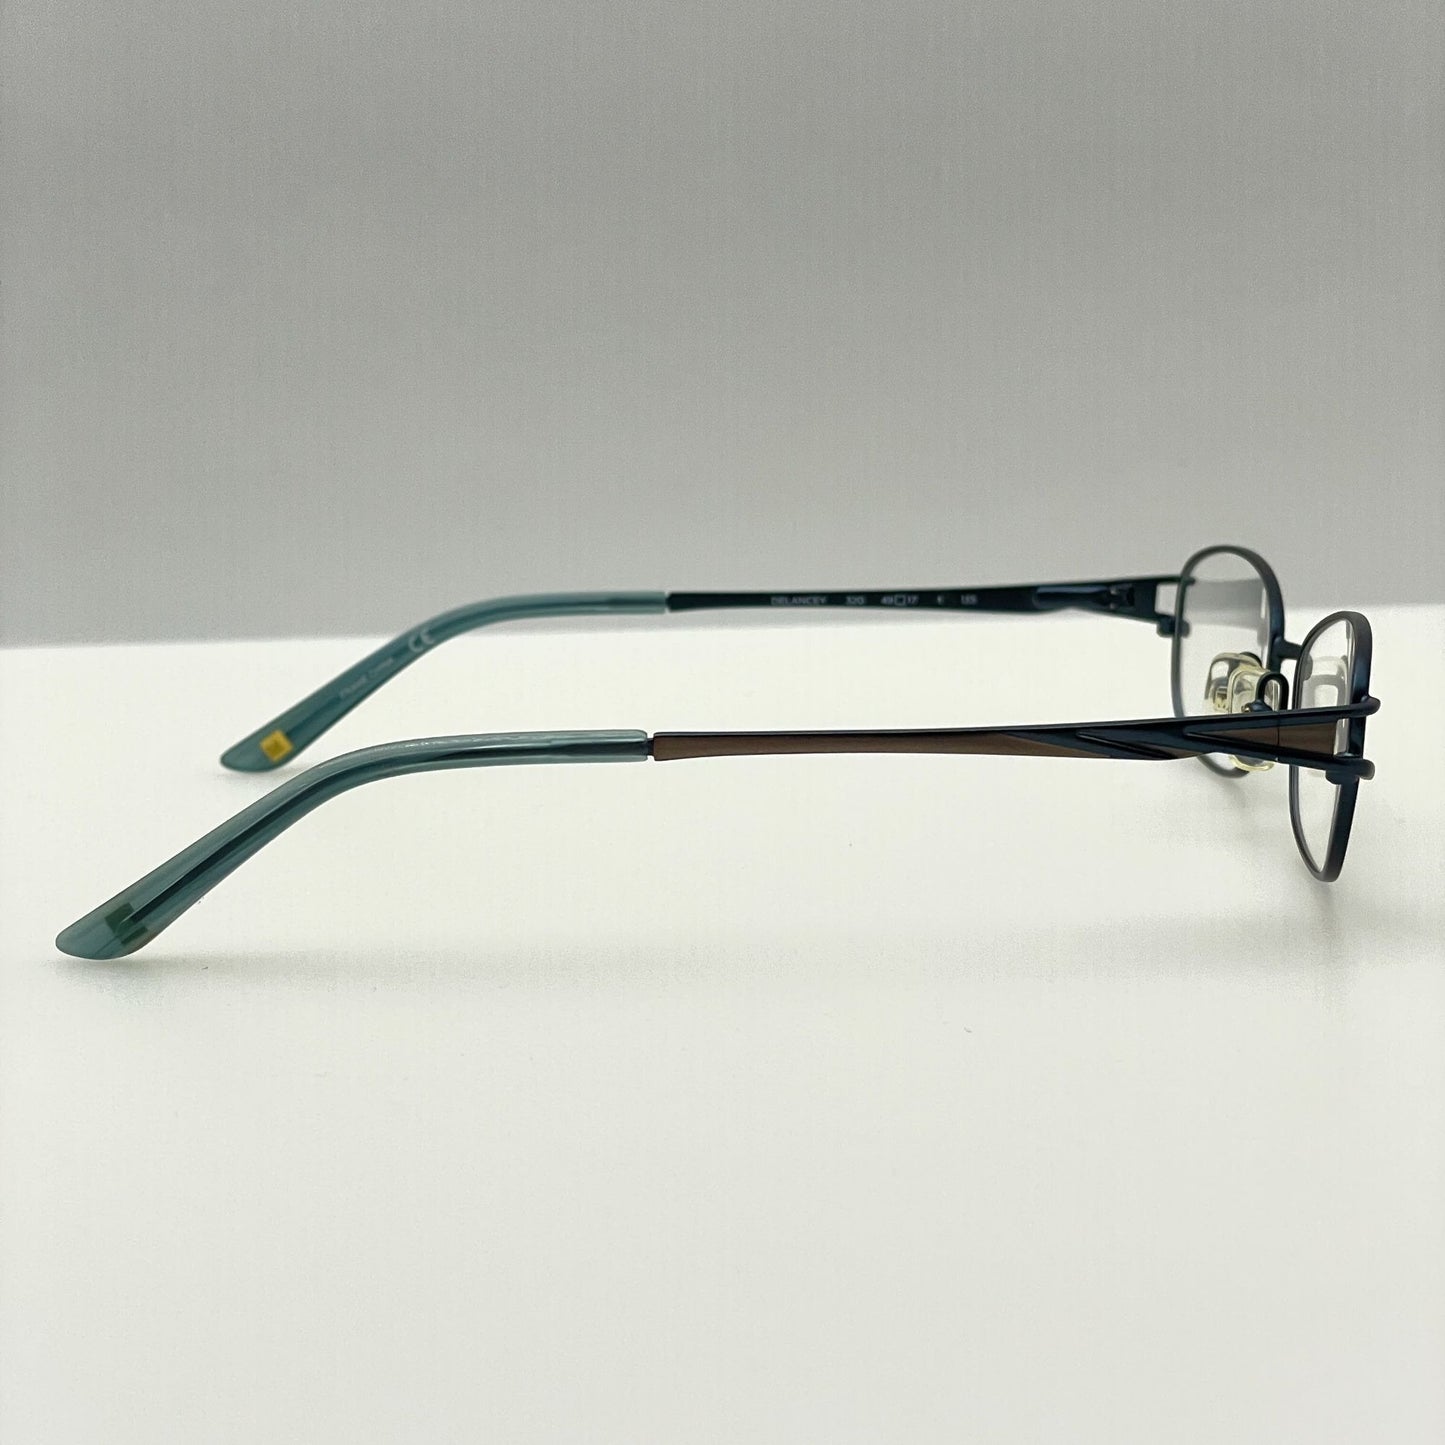 Marchon Eyeglasses Eye Glasses Frames NYC East Side Delancey 320 49-17-135